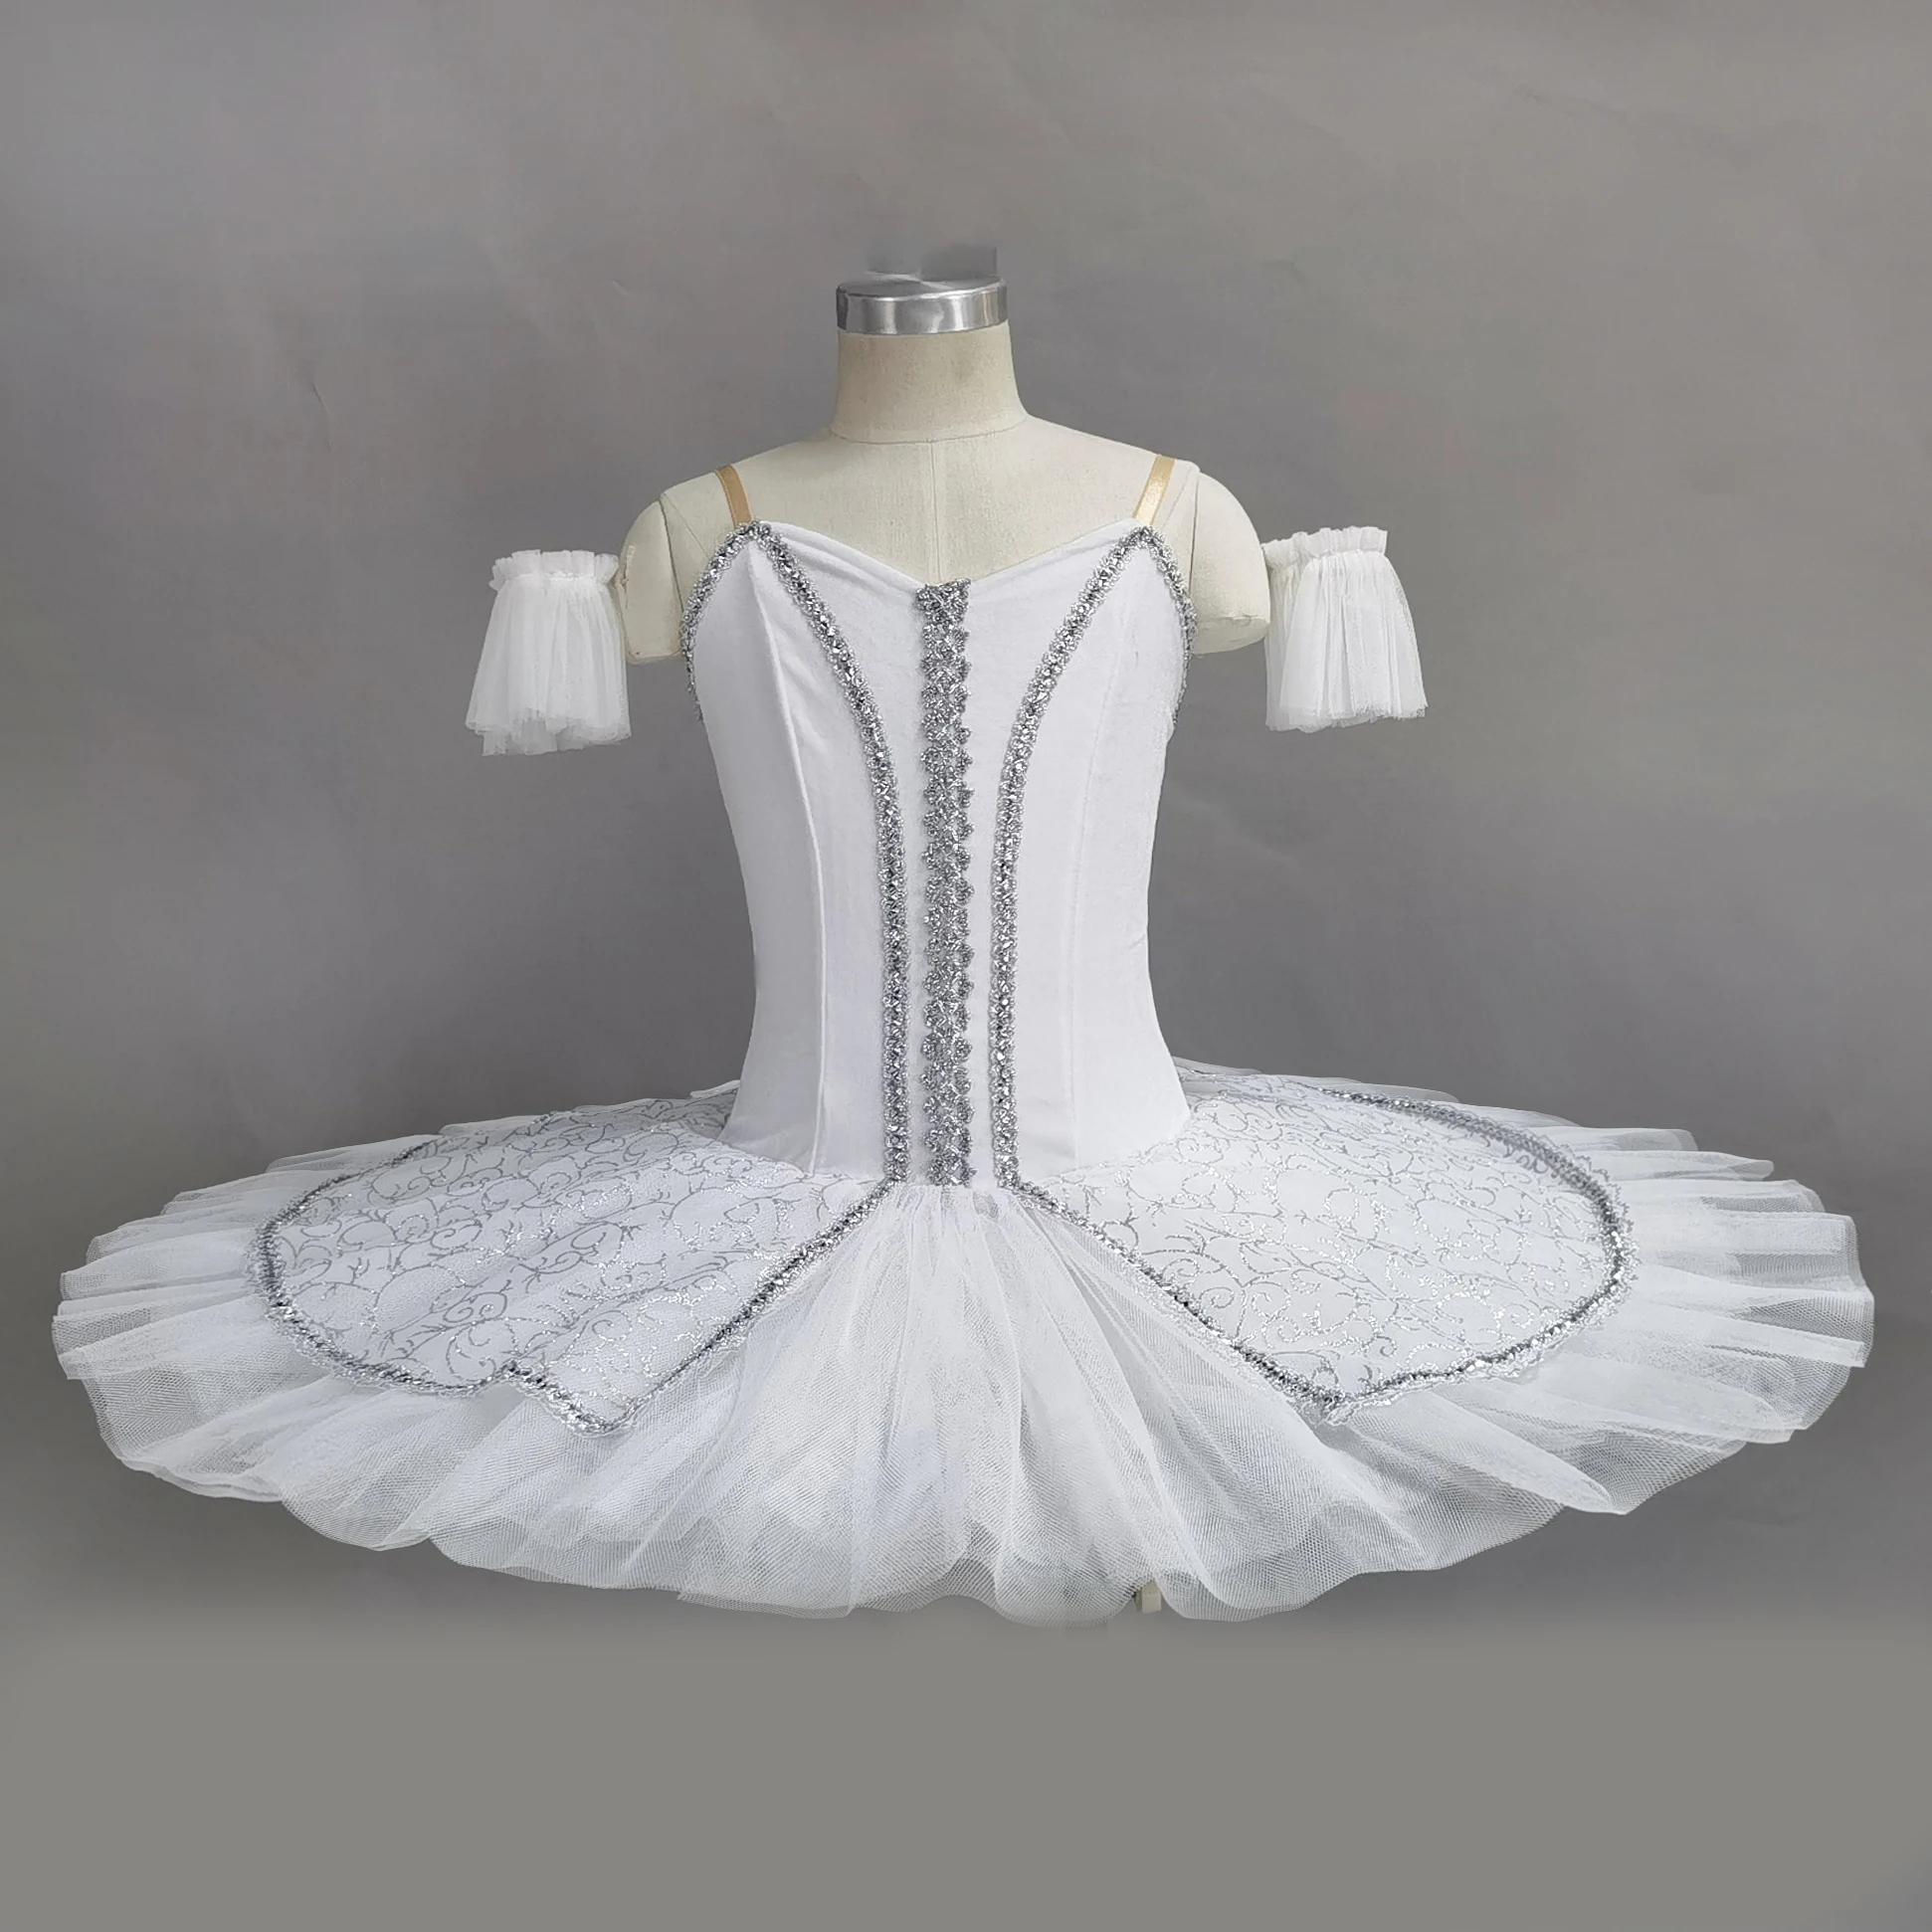 Белая Пачка Для Классических Танцев, Профессиональное Балетное Платье Для Девочек, Платье Балерины 